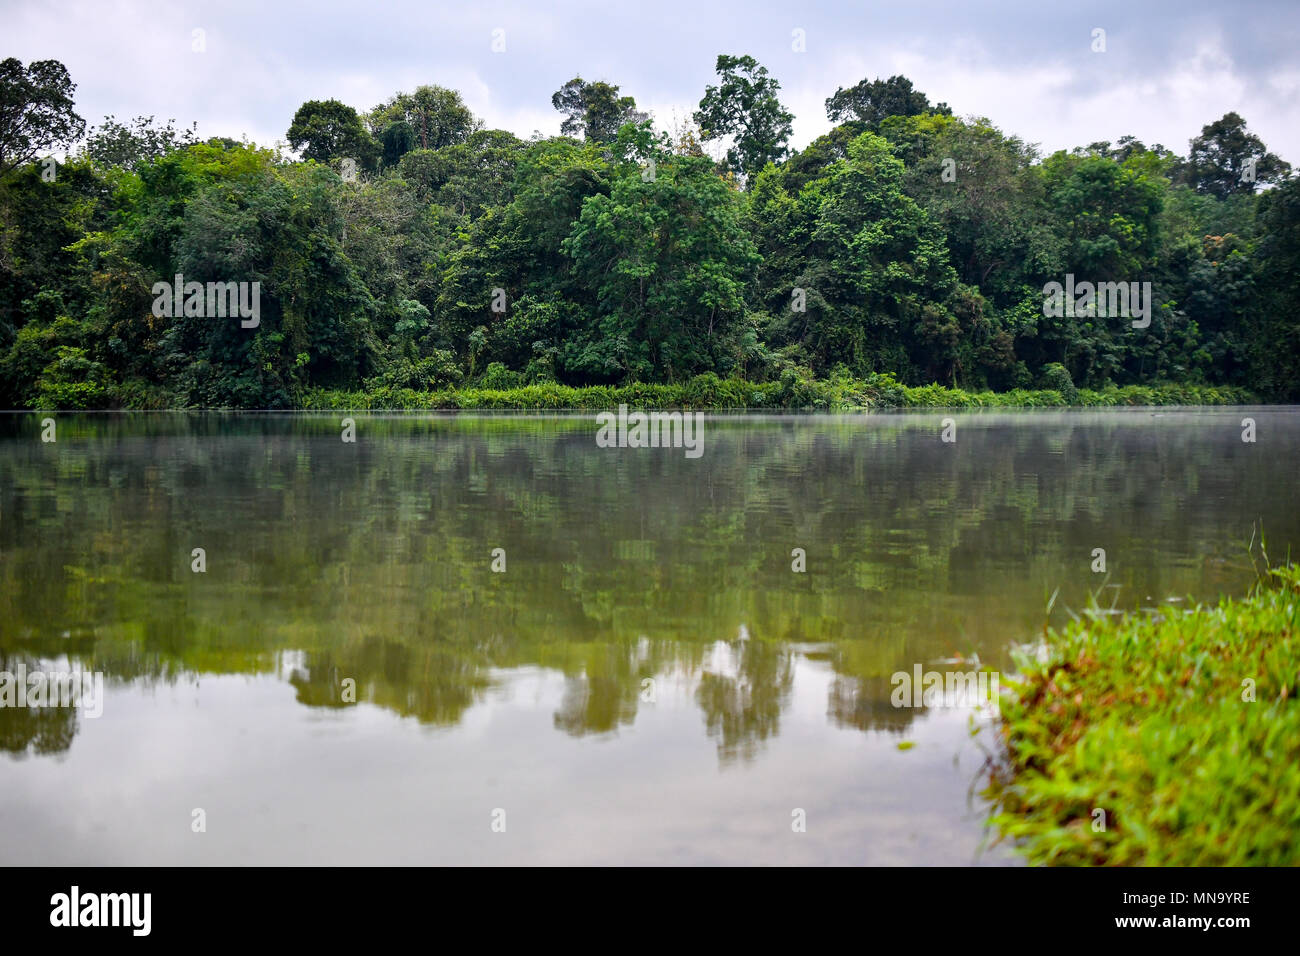 La foresta pluviale di riflessioni sul lago Foto Stock